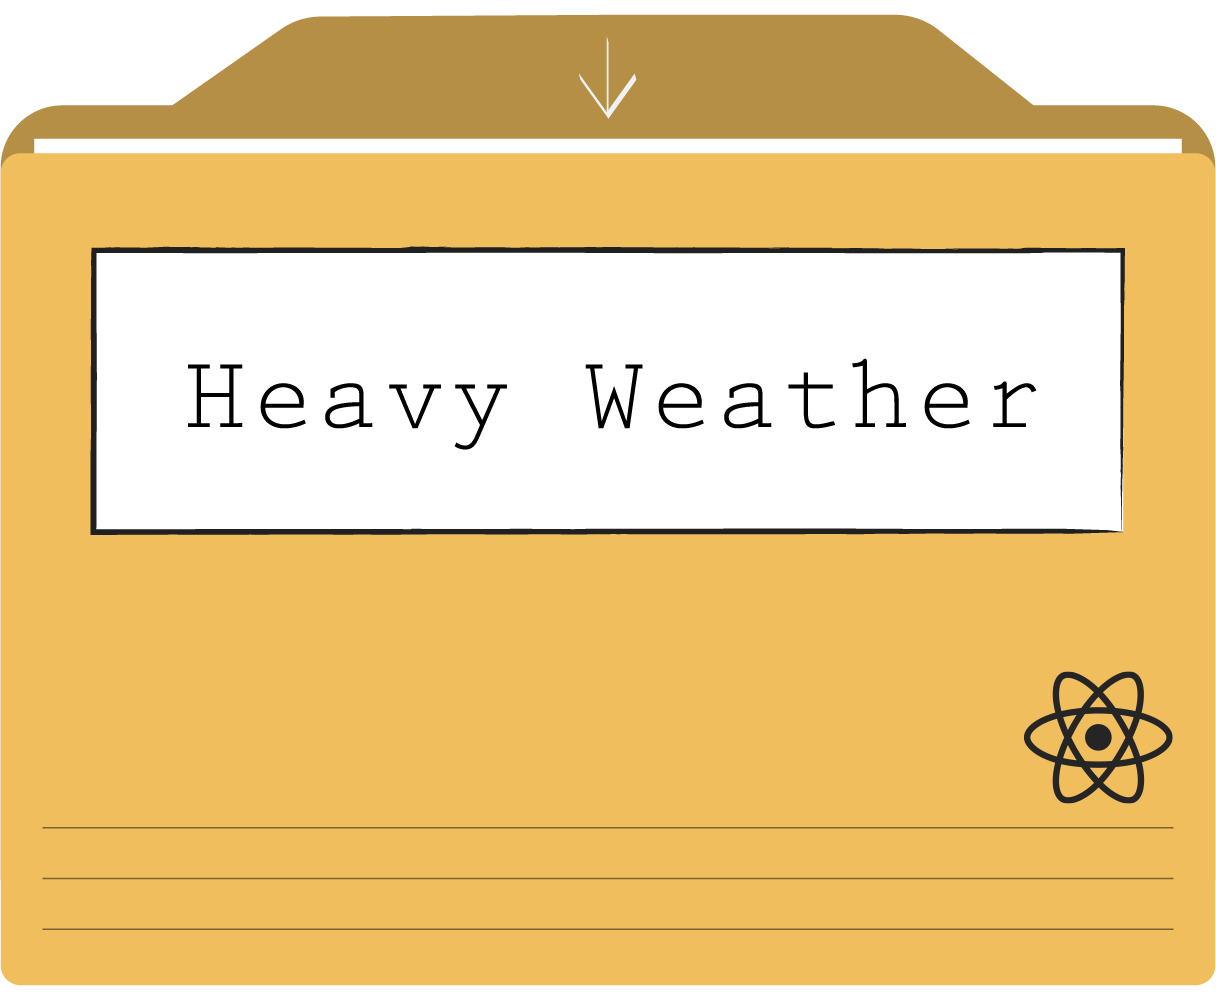 Heavy Weather project folder